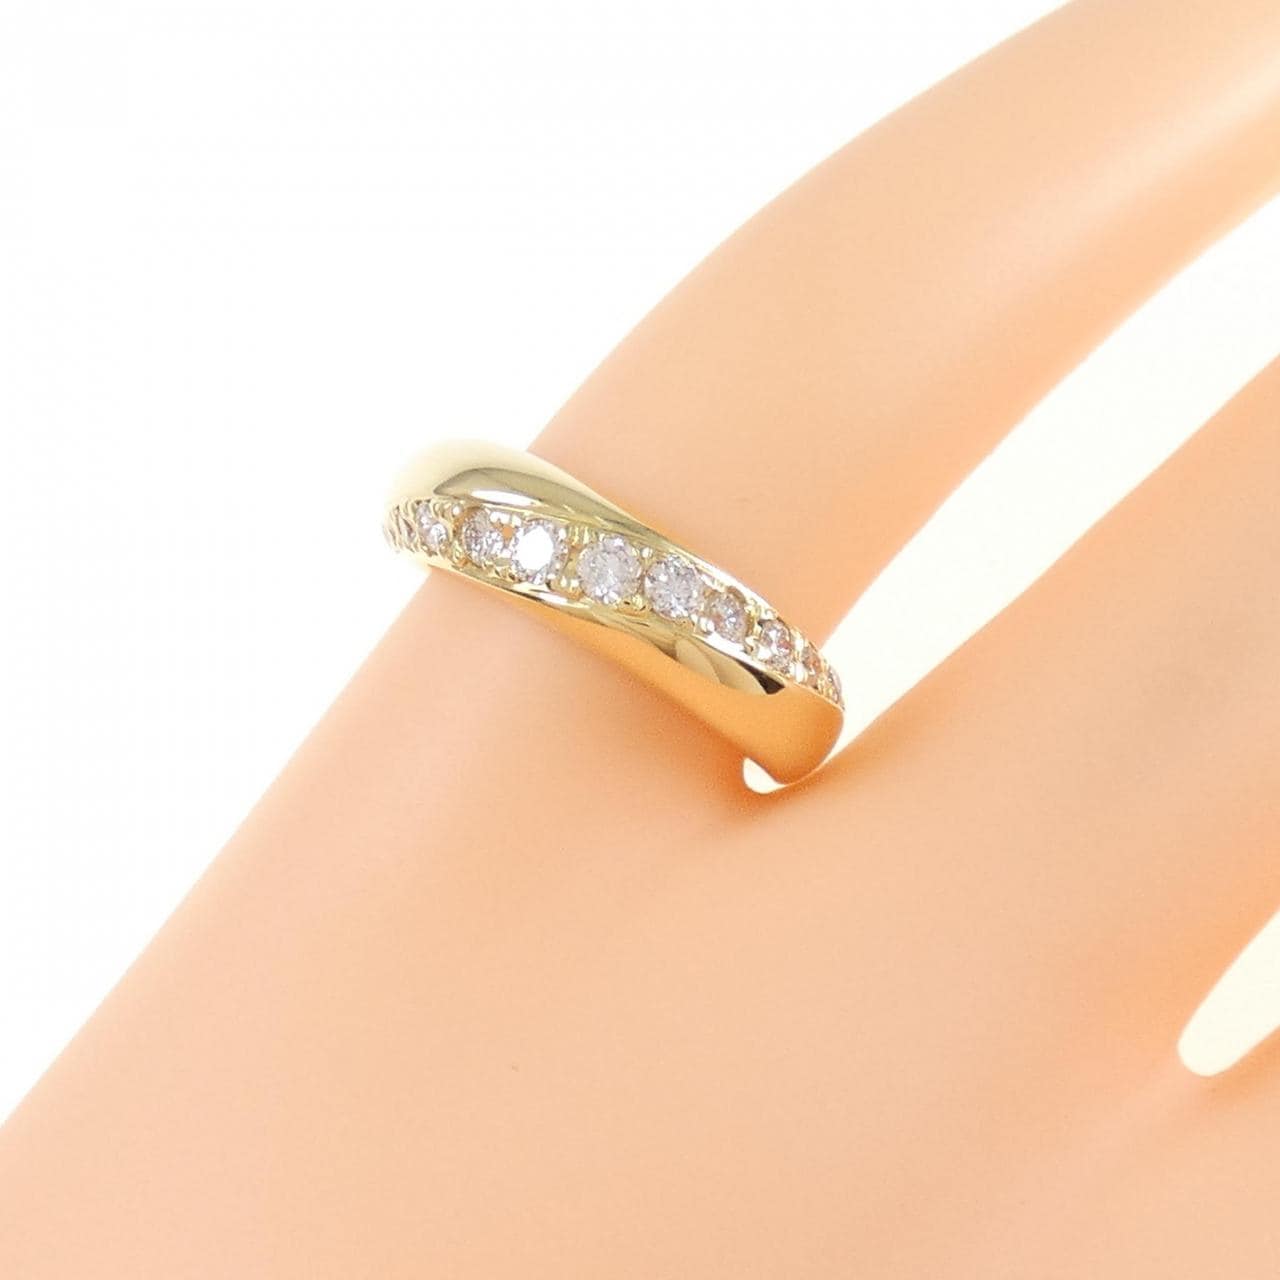 K18YG Diamond pinky ring 0.31CT